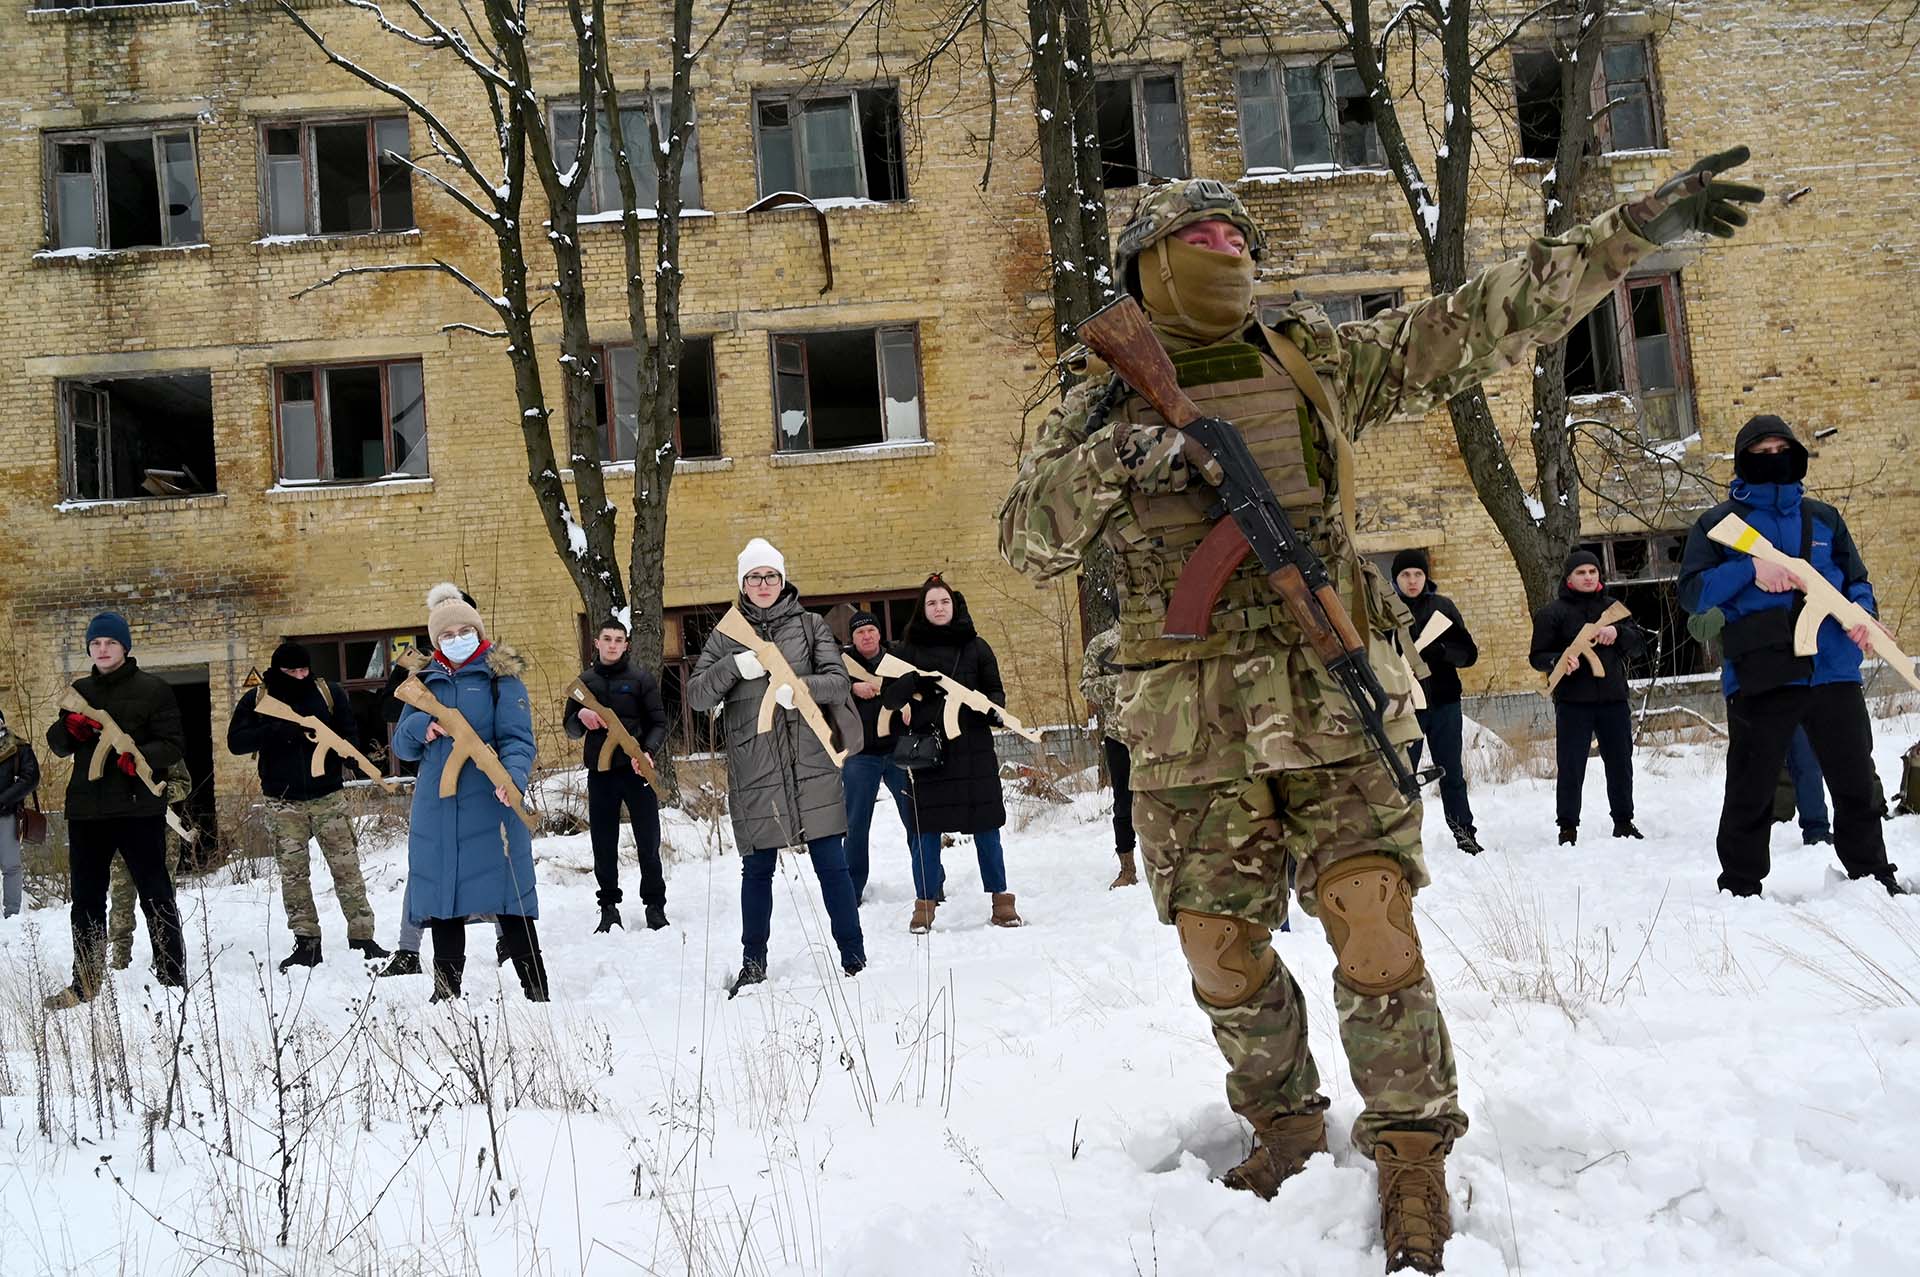 30 de enero - Aumenta la posibilidad de una invasión rusa a Ucrania. 